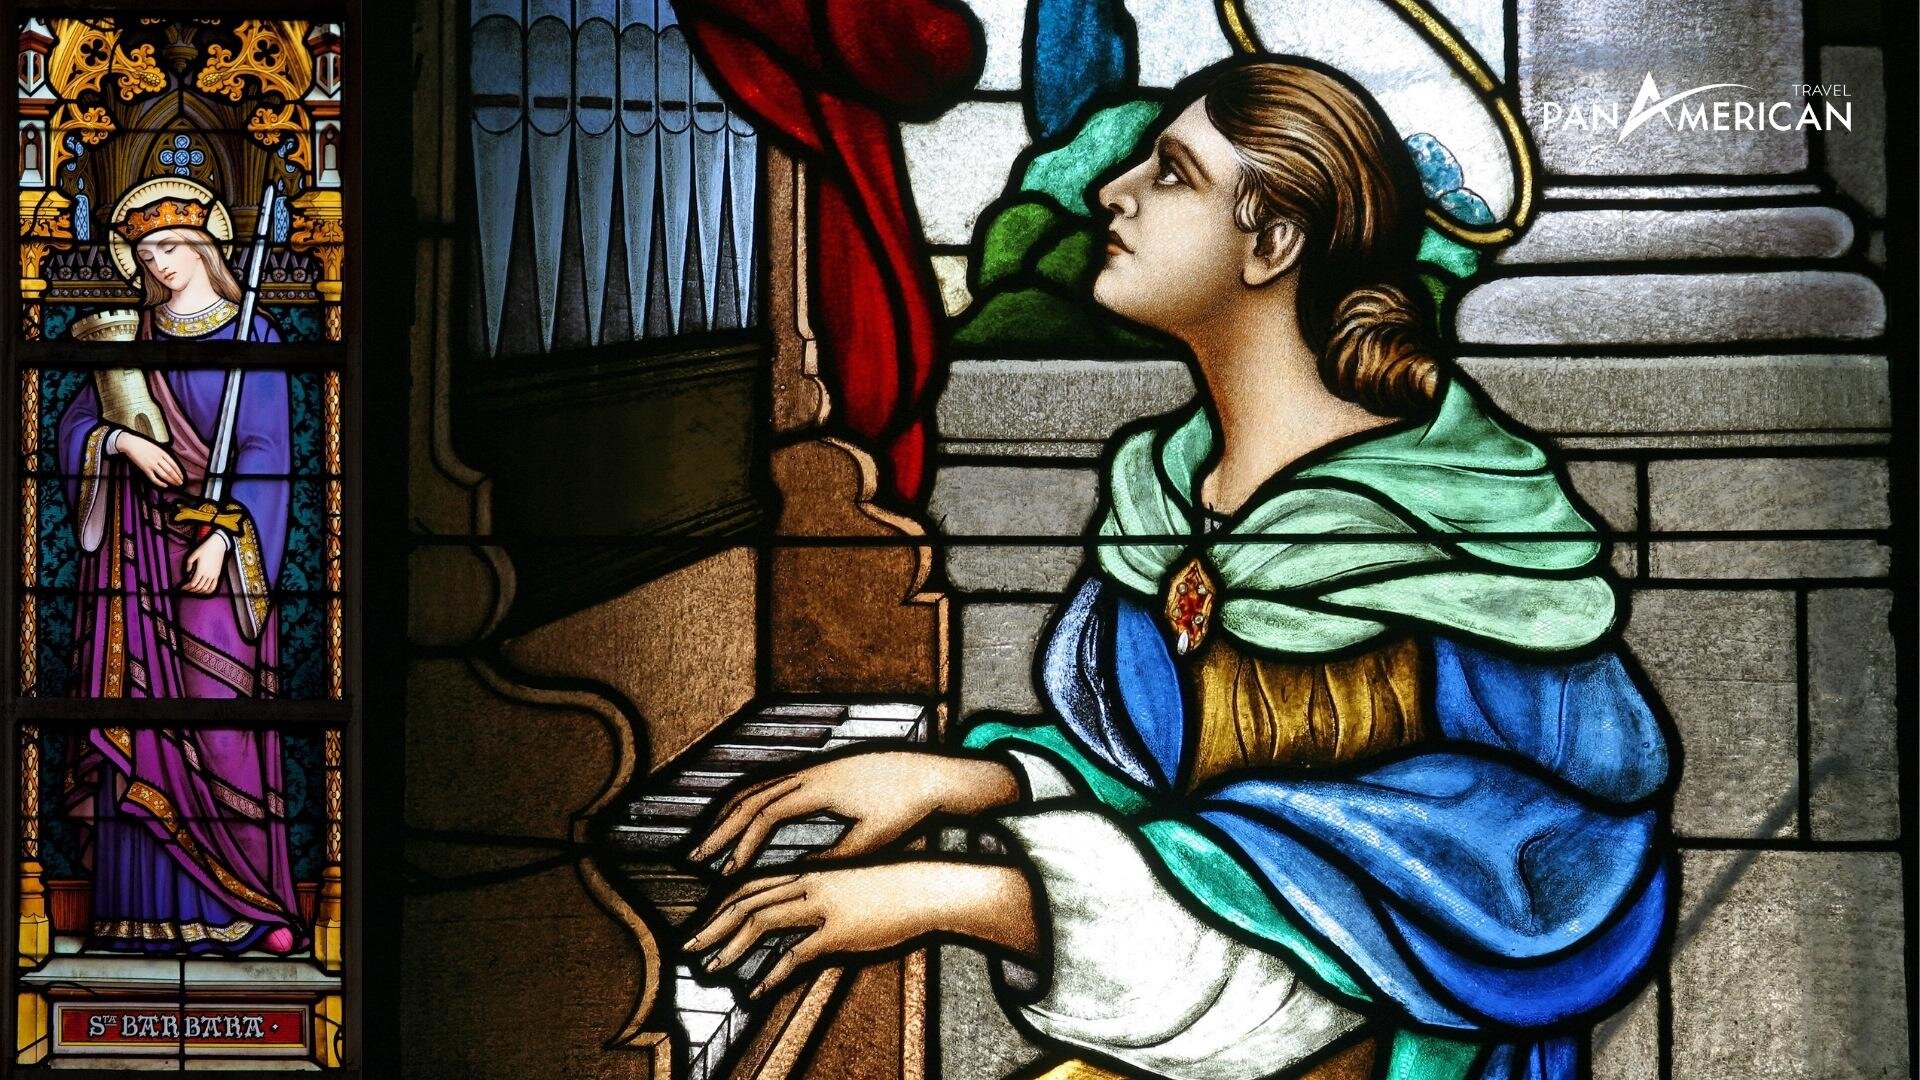 Những bức họa tinh xảo trên những tấm cửa kính tại nhà thờ